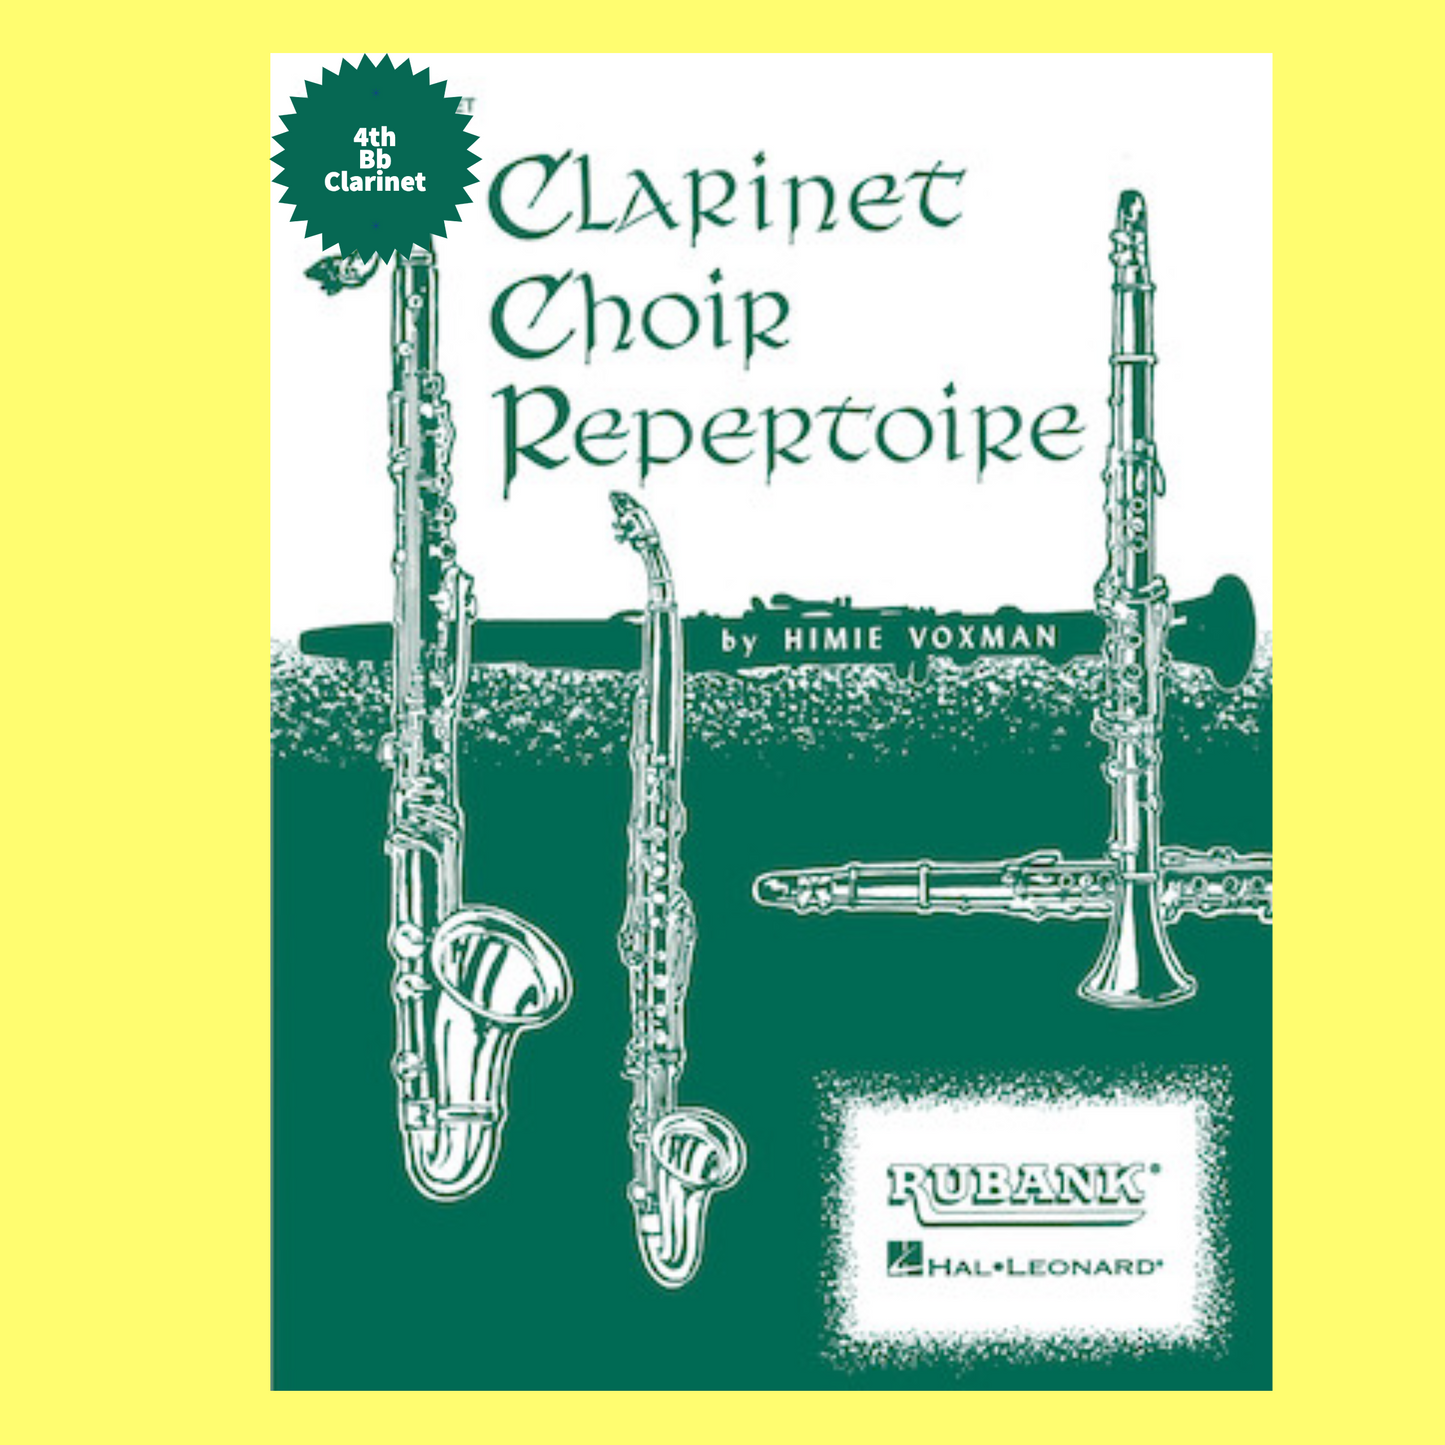 Clarinet Choir Repertoire - 4th Bb Clarinet Part Book